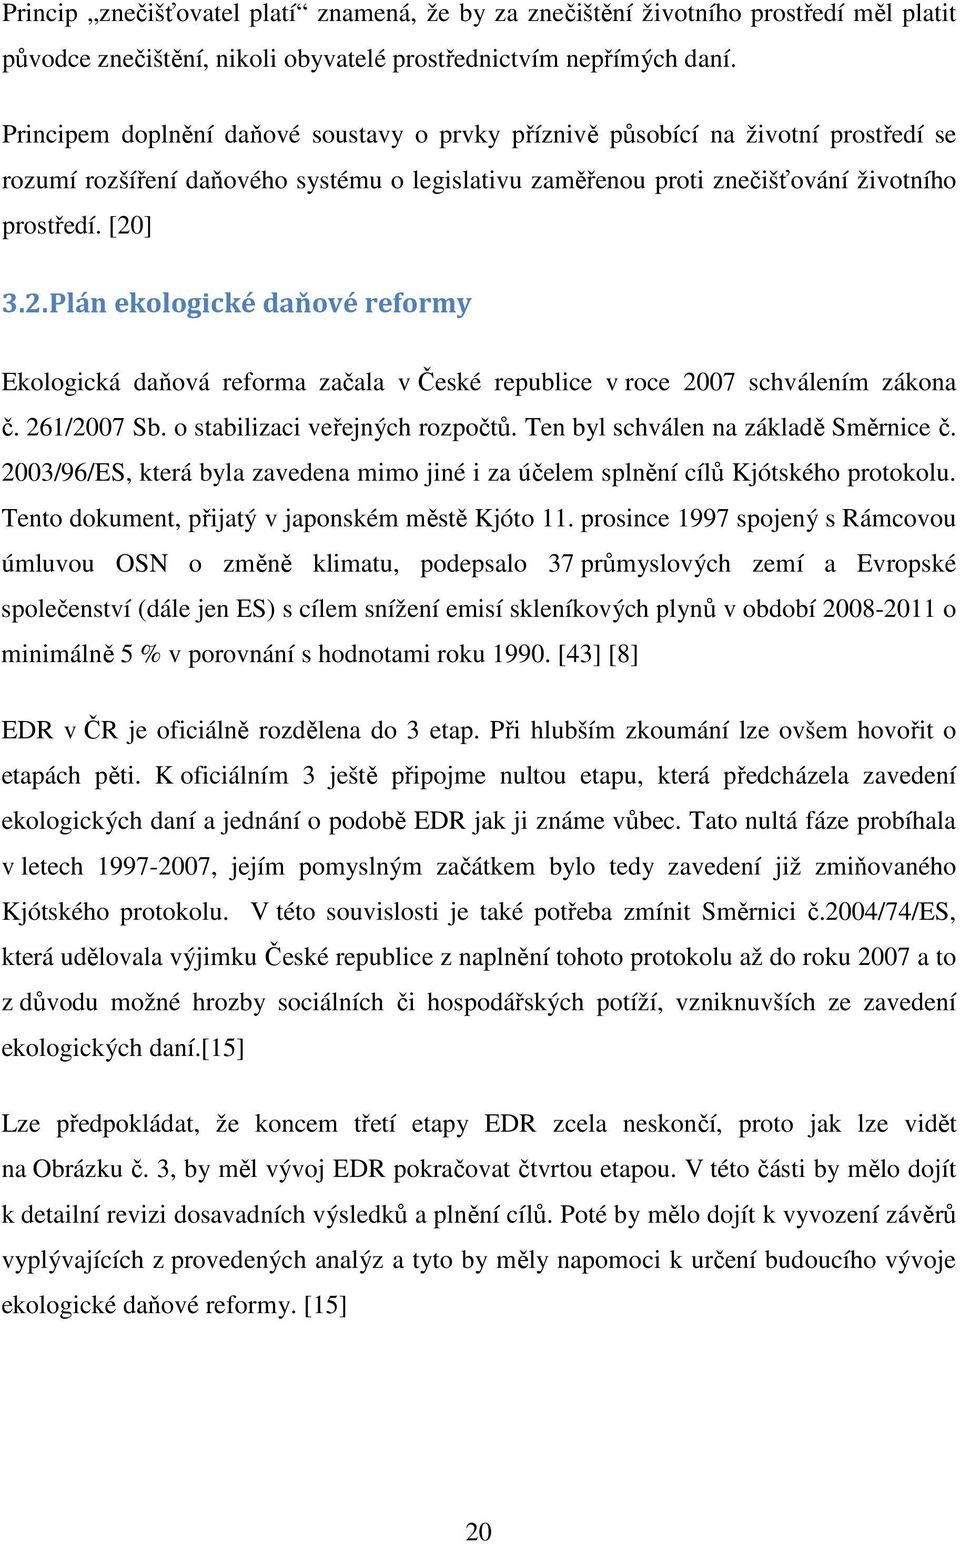 ] 3.2. Plán ekologické daňové reformy Ekologická daňová reforma začala v České republice v roce 2007 schválením zákona č. 261/2007 Sb. o stabilizaci veřejných rozpočtů.